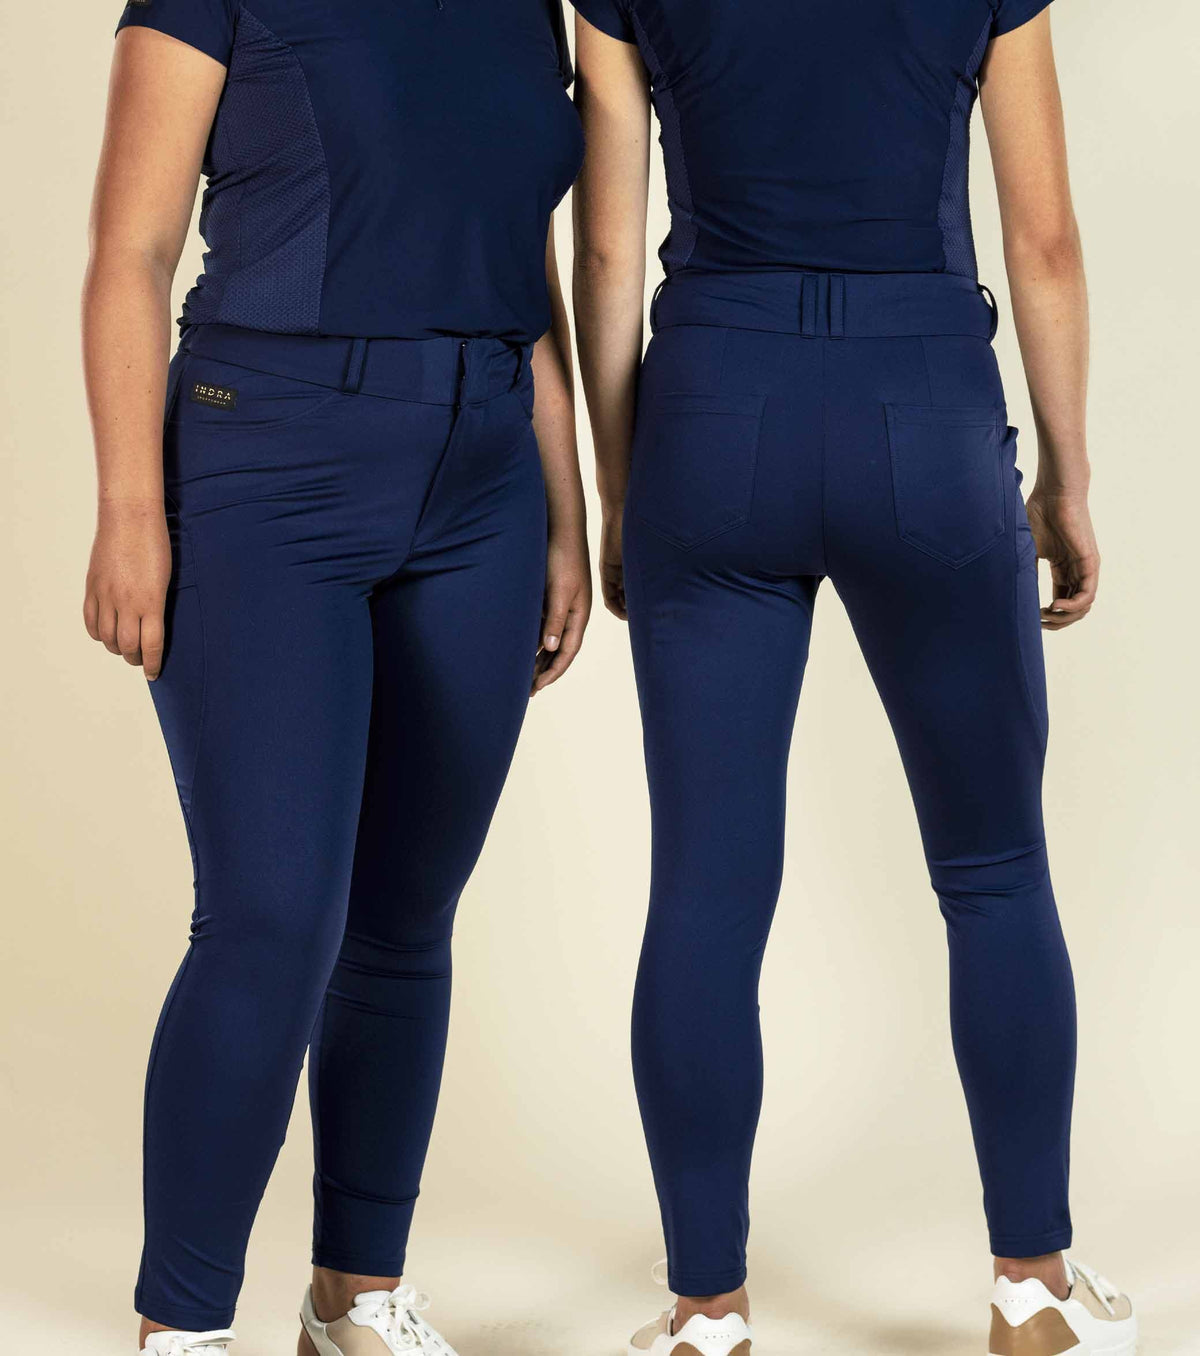 Women's Navy Blue Golf Pants High Waist XXS-XXL